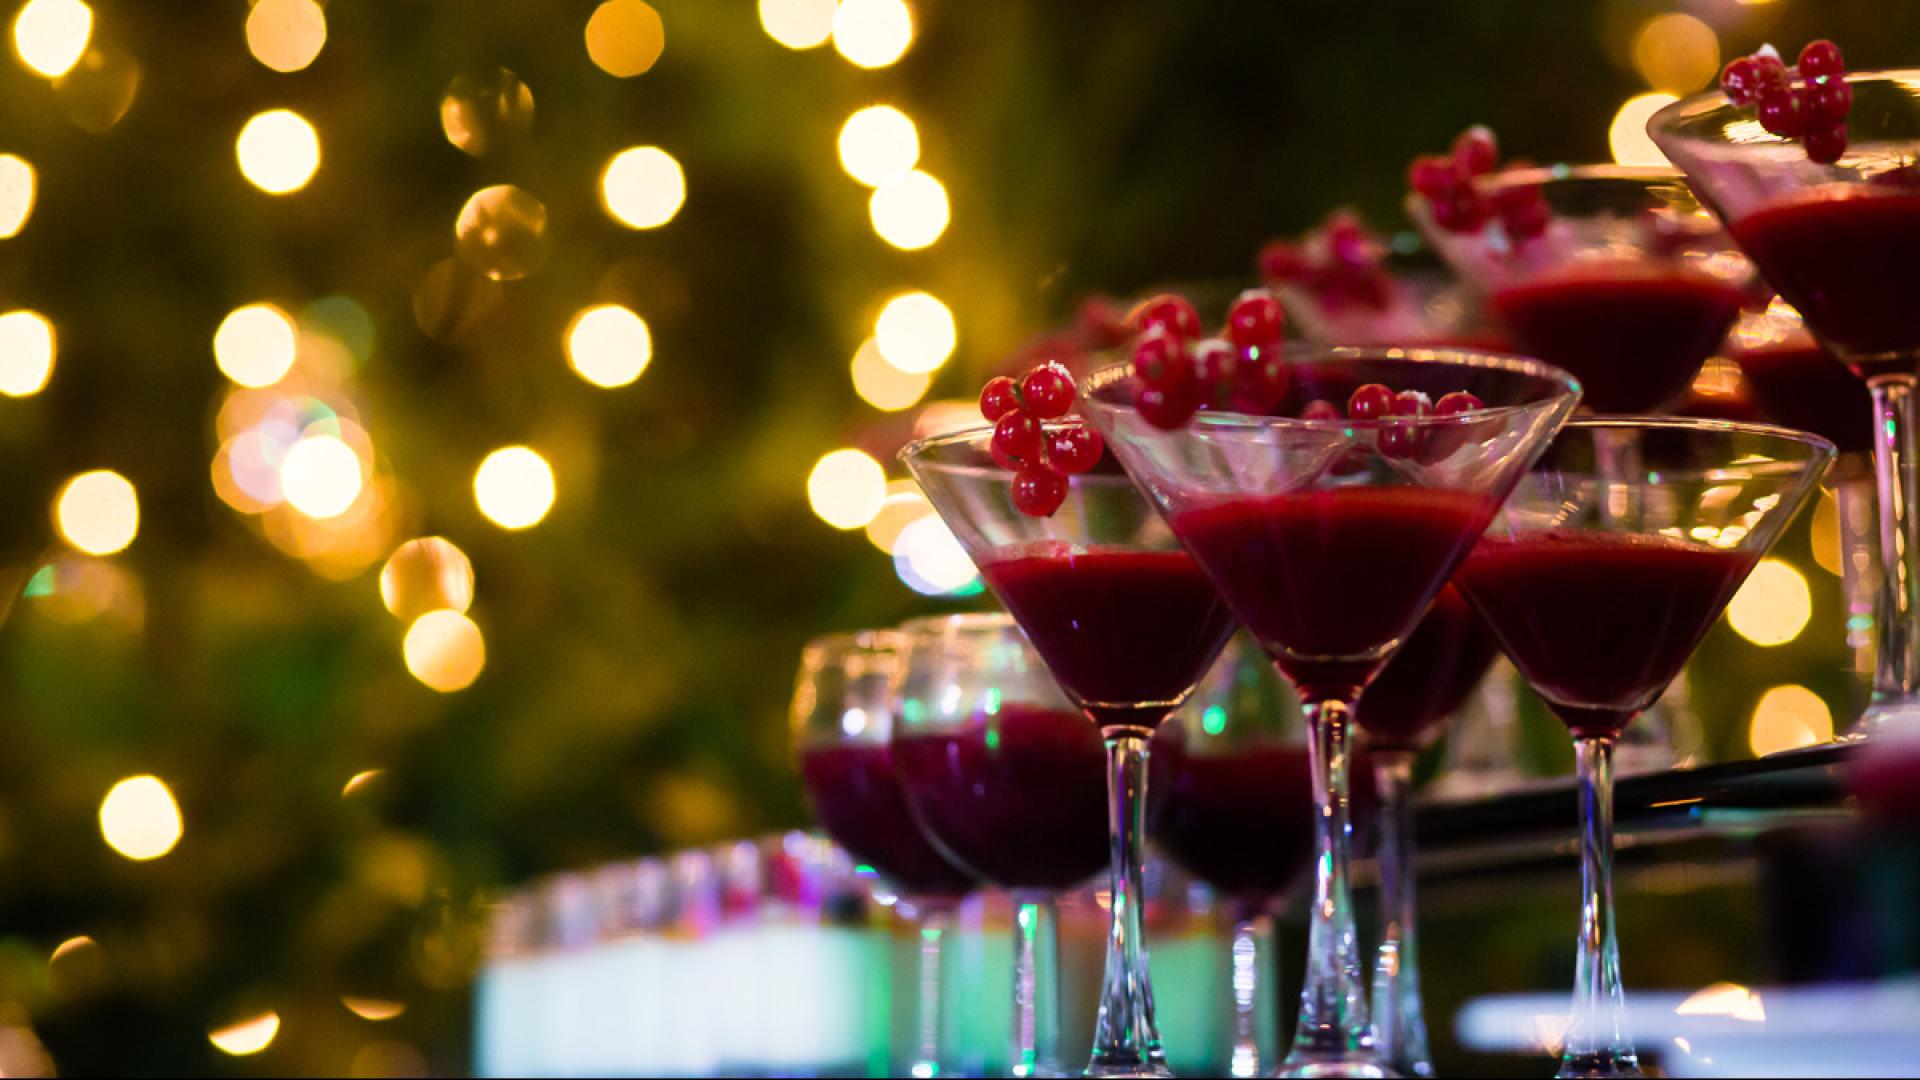 Cocktail rossi in bicchieri da Martini con decorazioni di frutti rossi, luci sfocate sullo sfondo.